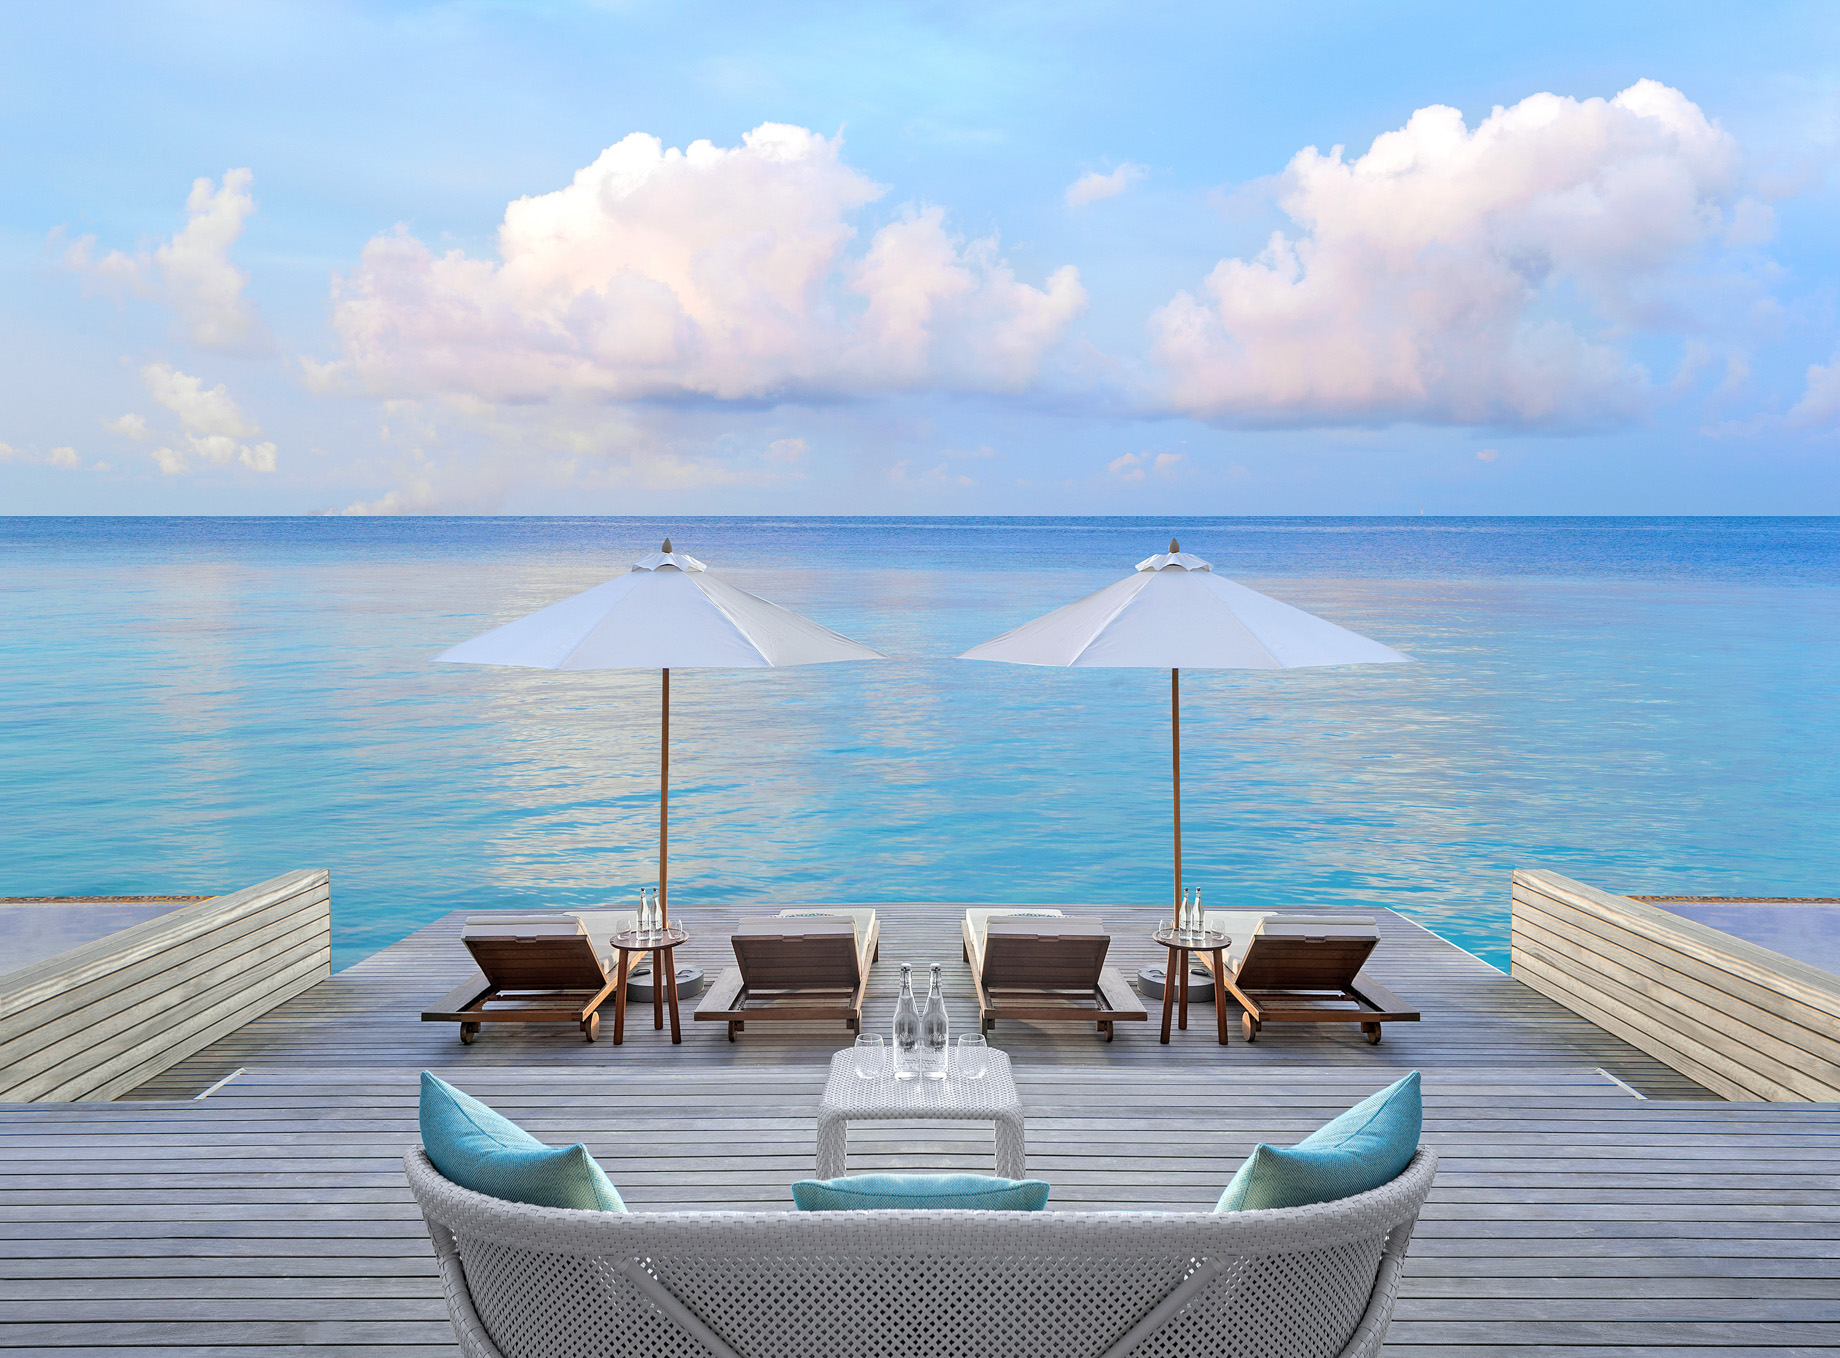 Anantara Kihavah Maldives Villas Resort – Baa Atoll, Maldives – Spa Outdoor Relaxation Deck